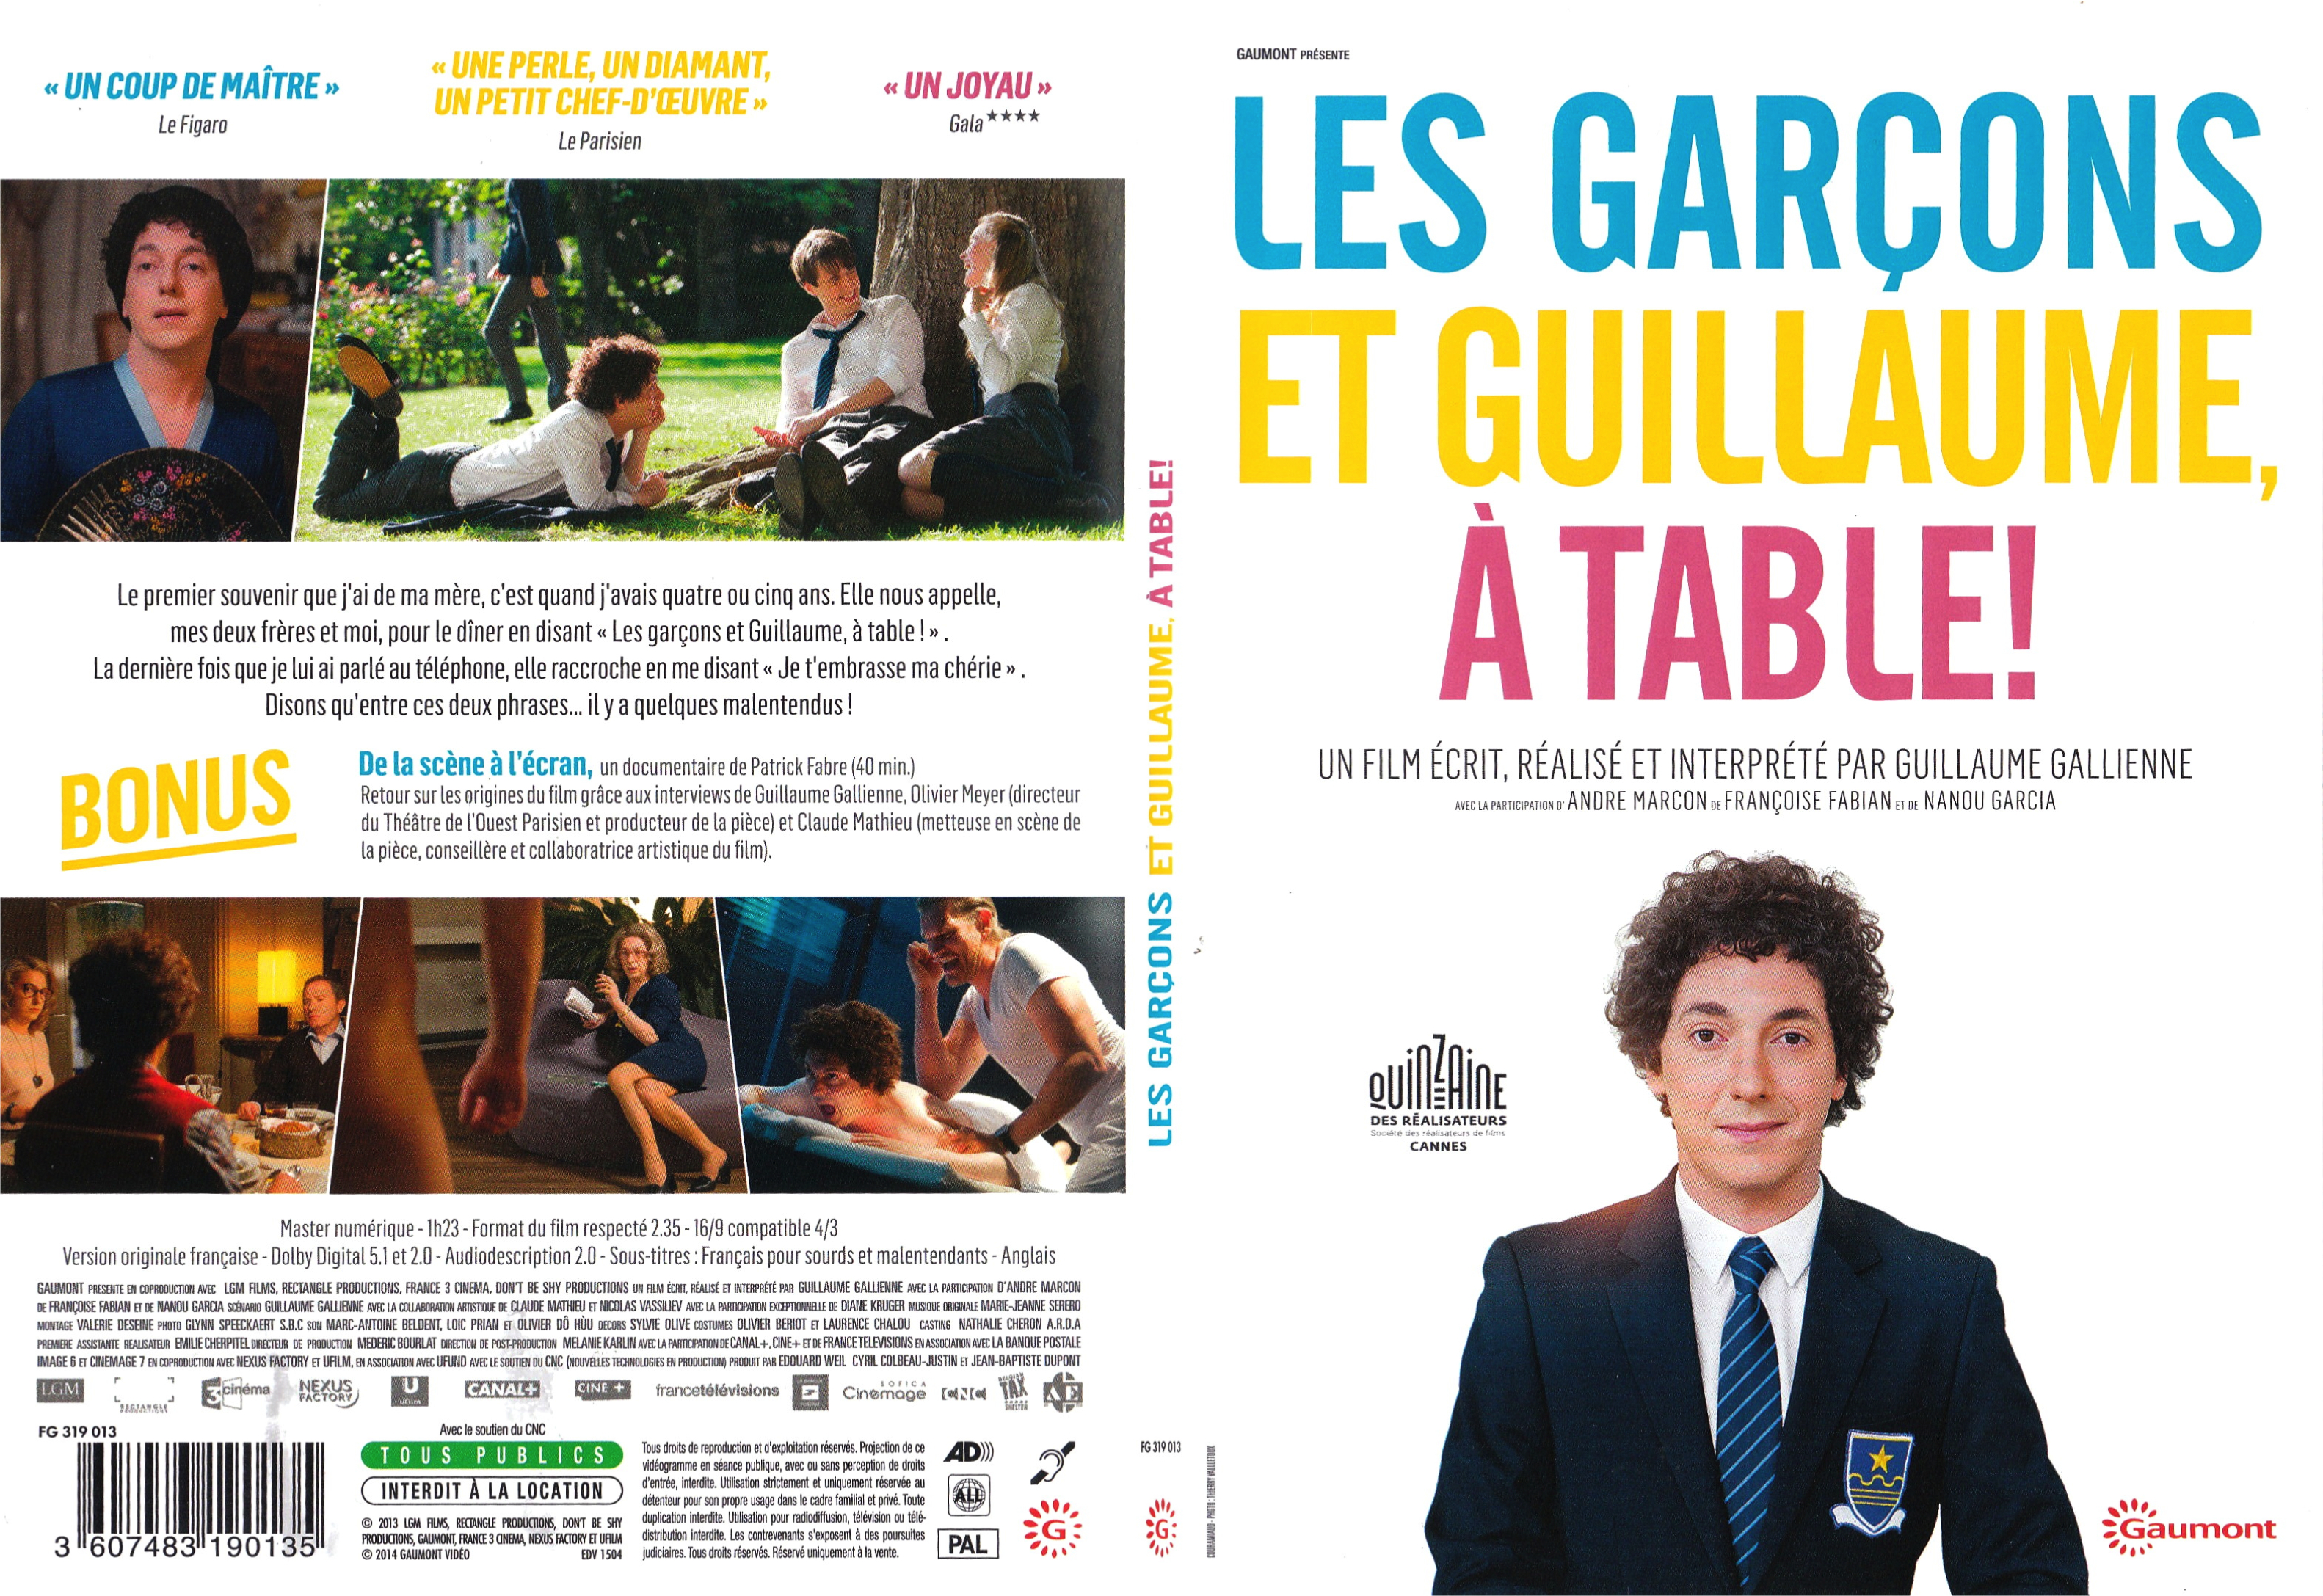 Jaquette DVD Les Garons et Guillaume,  table - SLIM